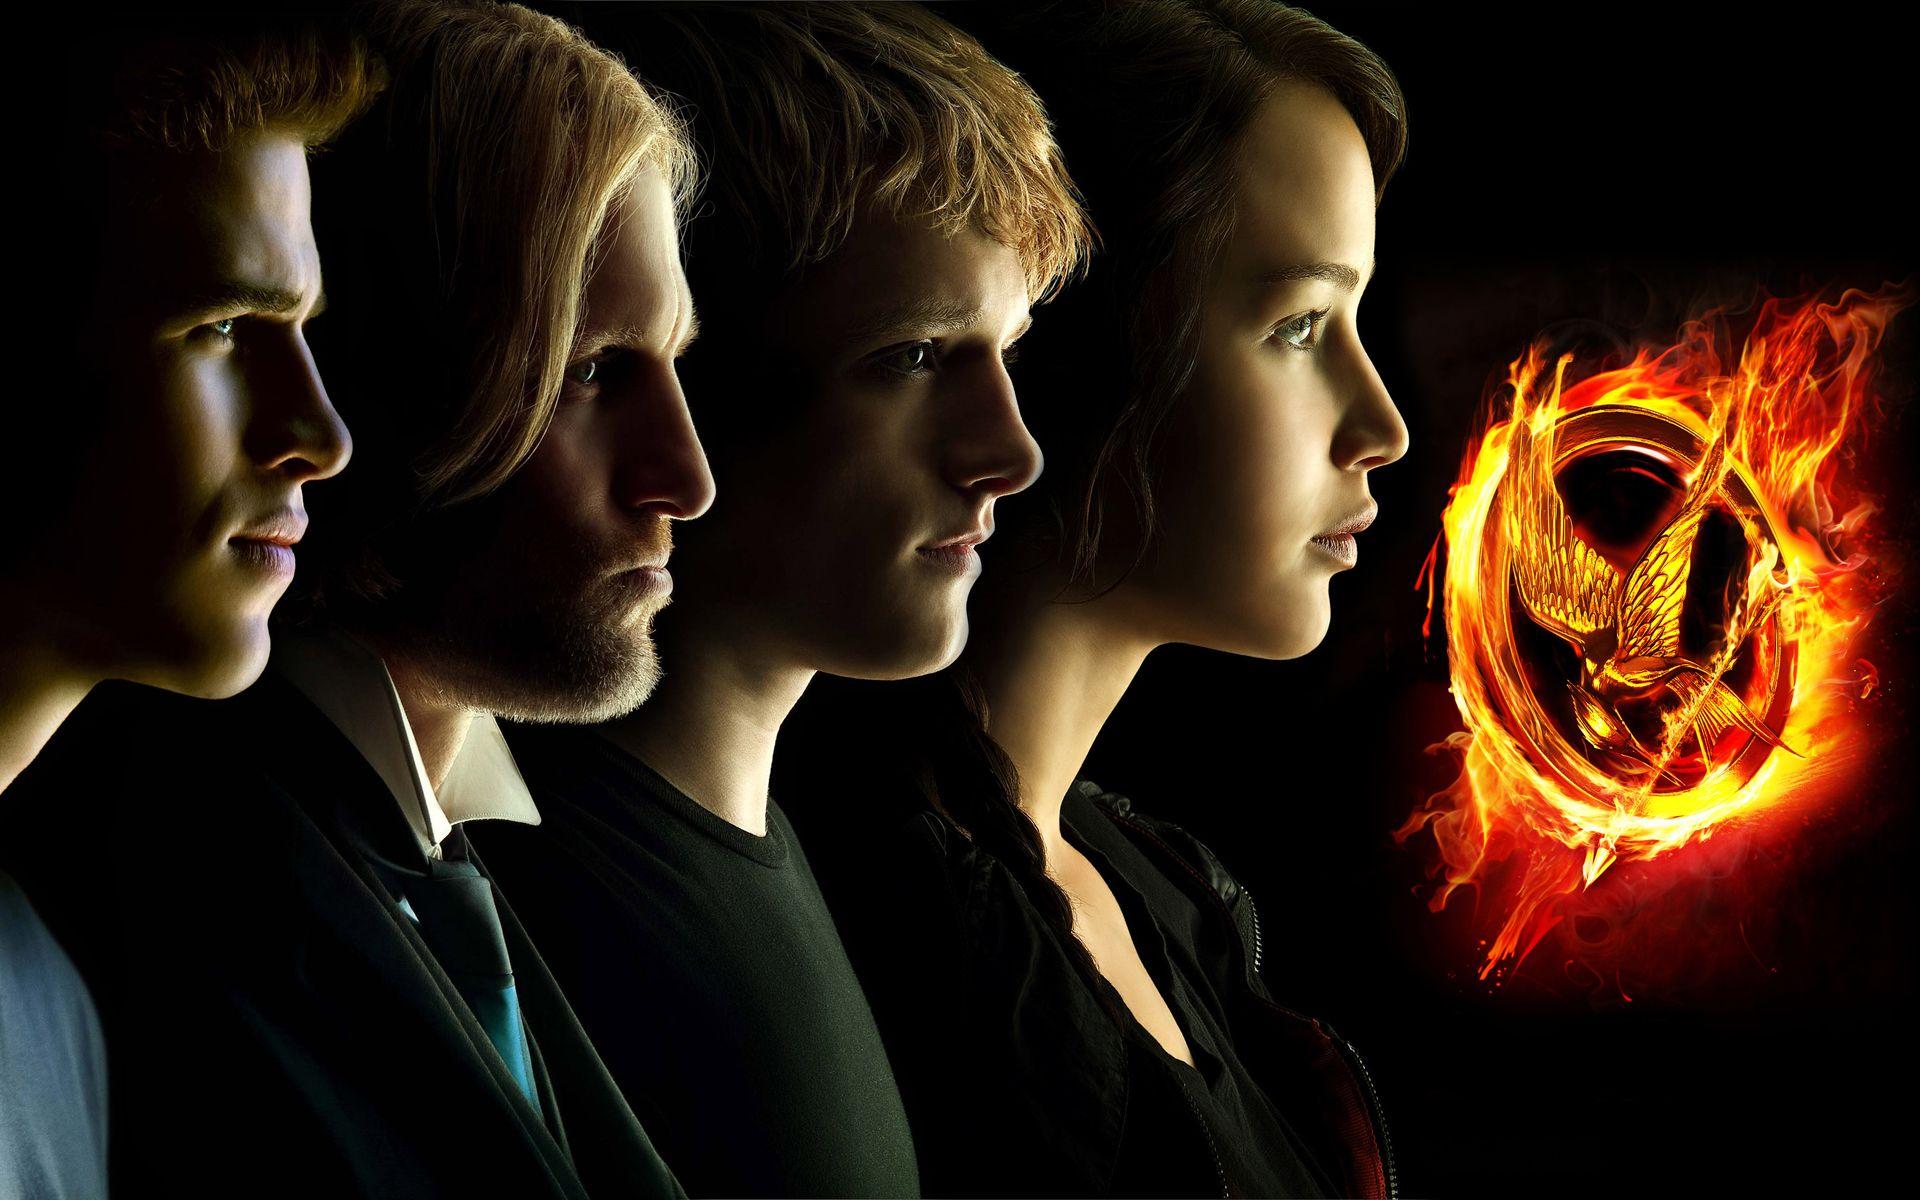 The Hunger Games Catching Fire Wallpaper Widescreen